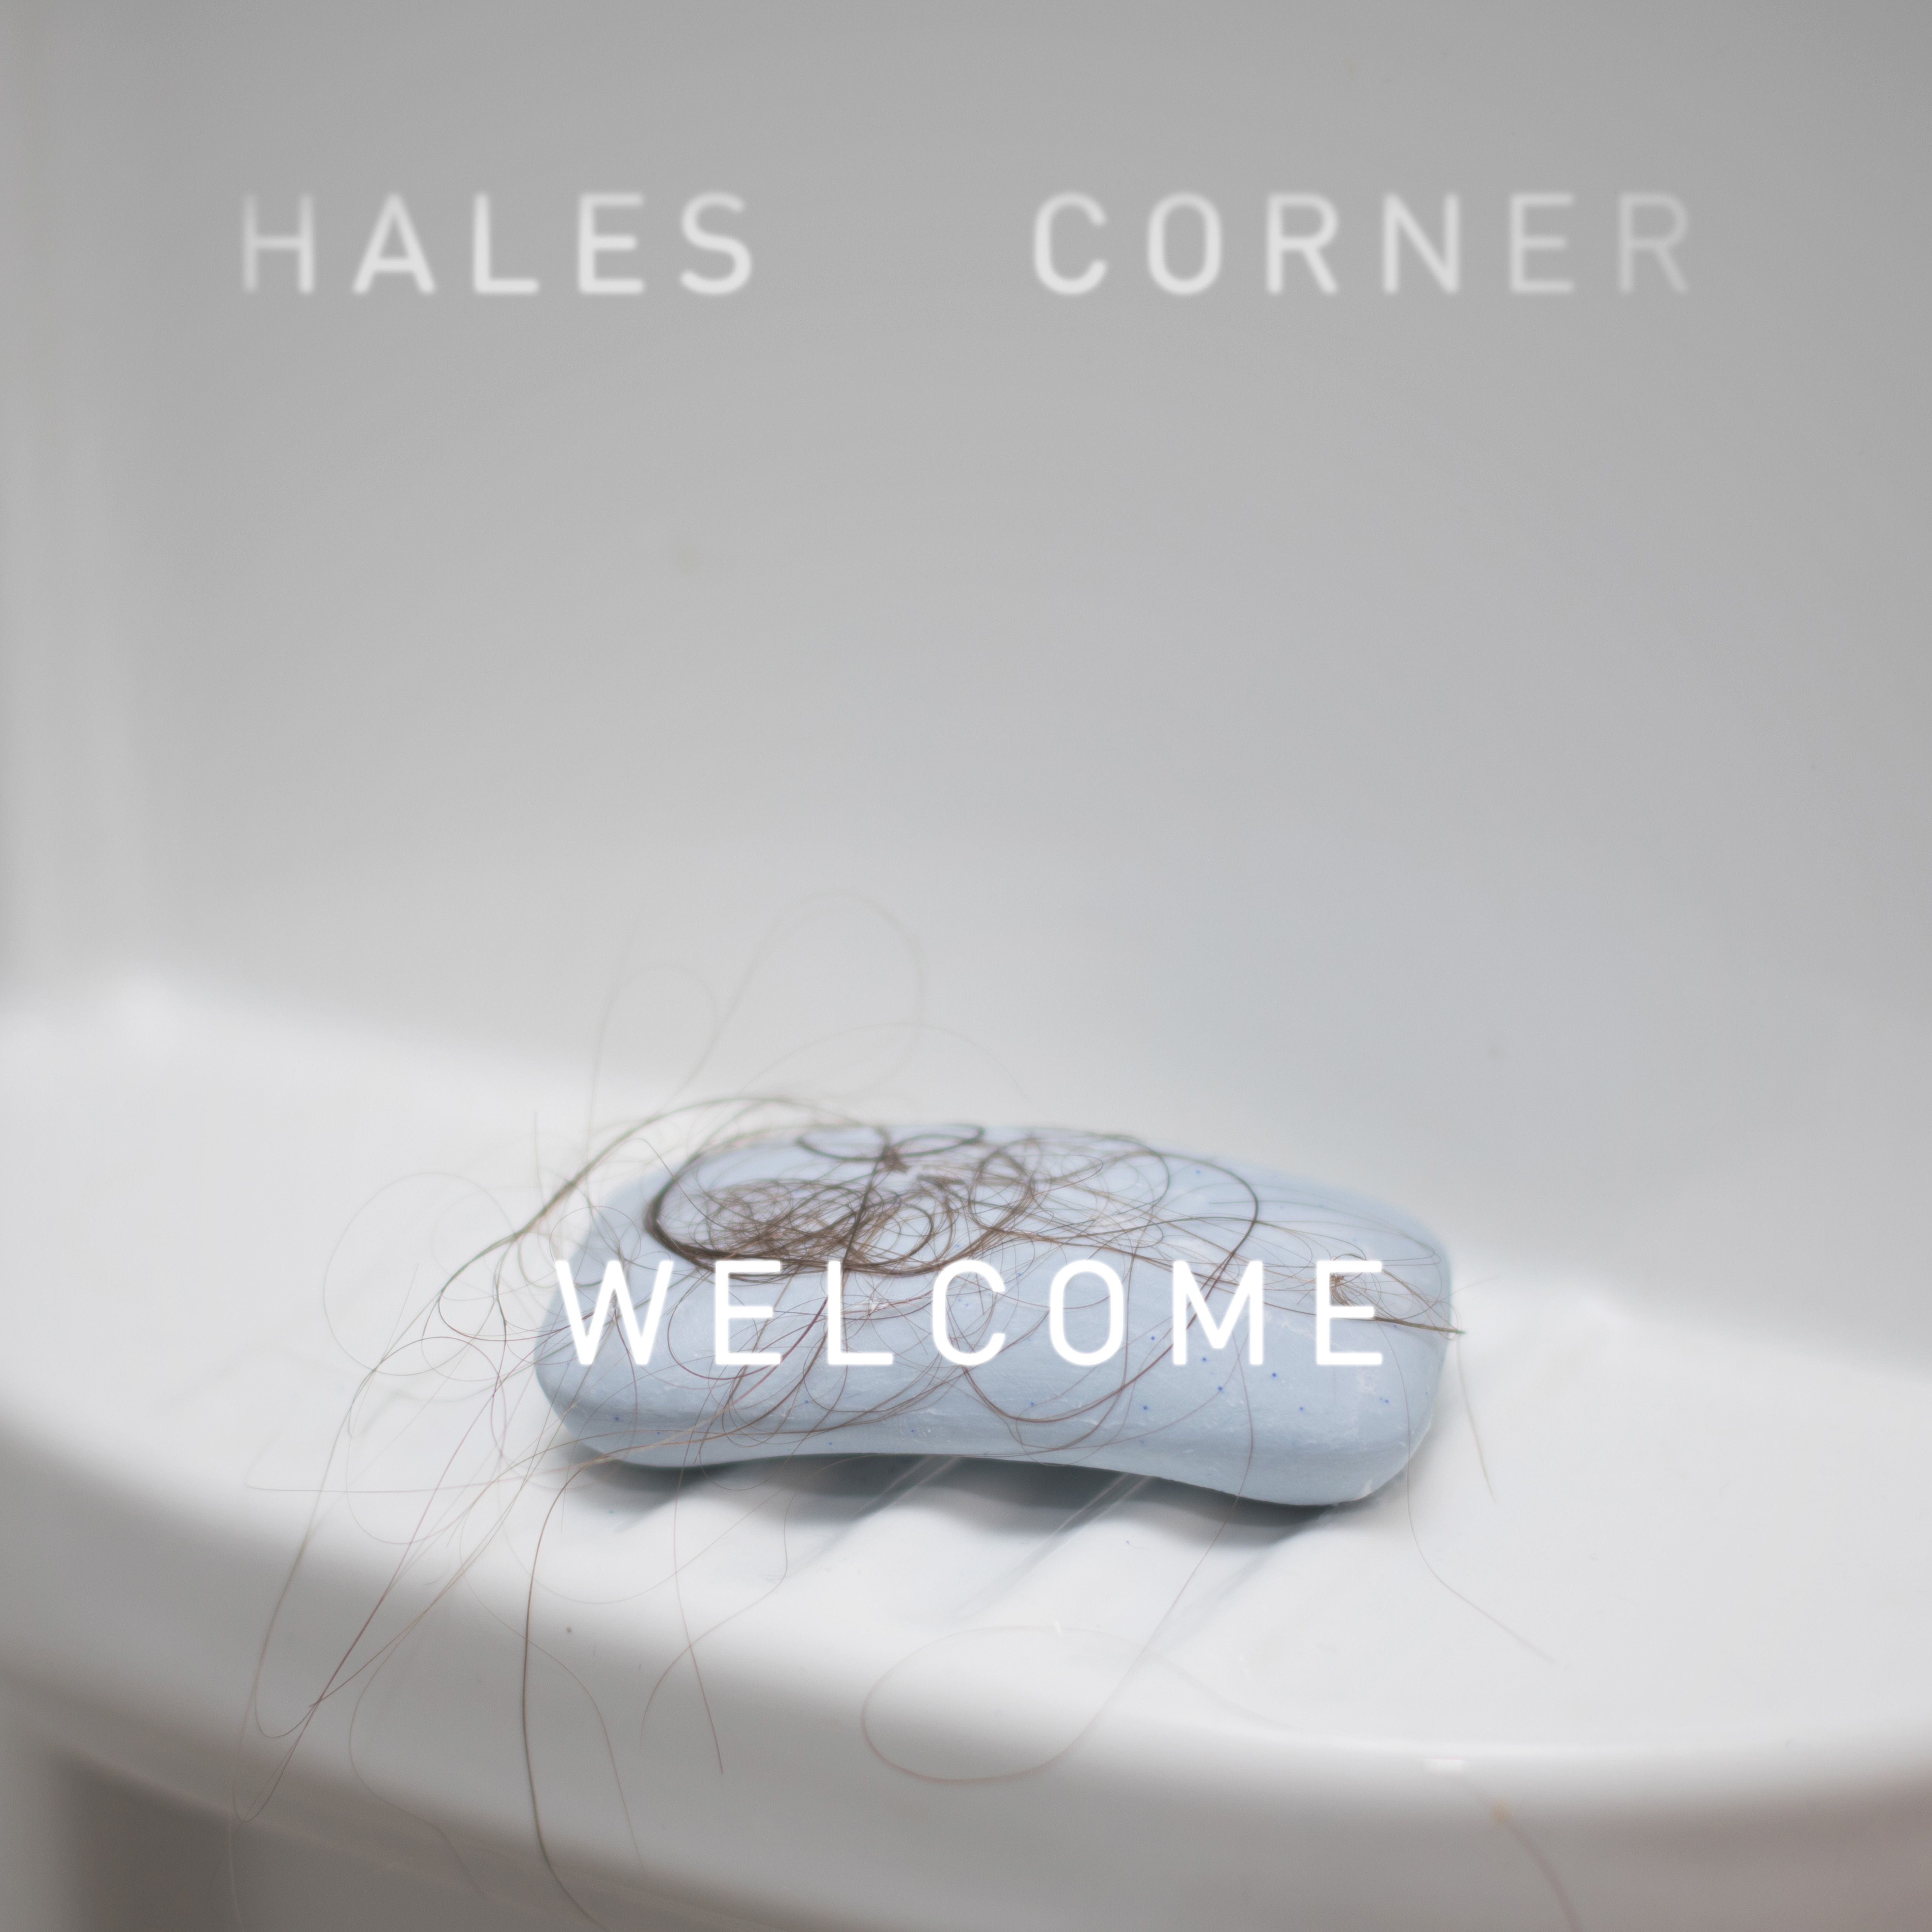 Hales Corner – “Welcome”